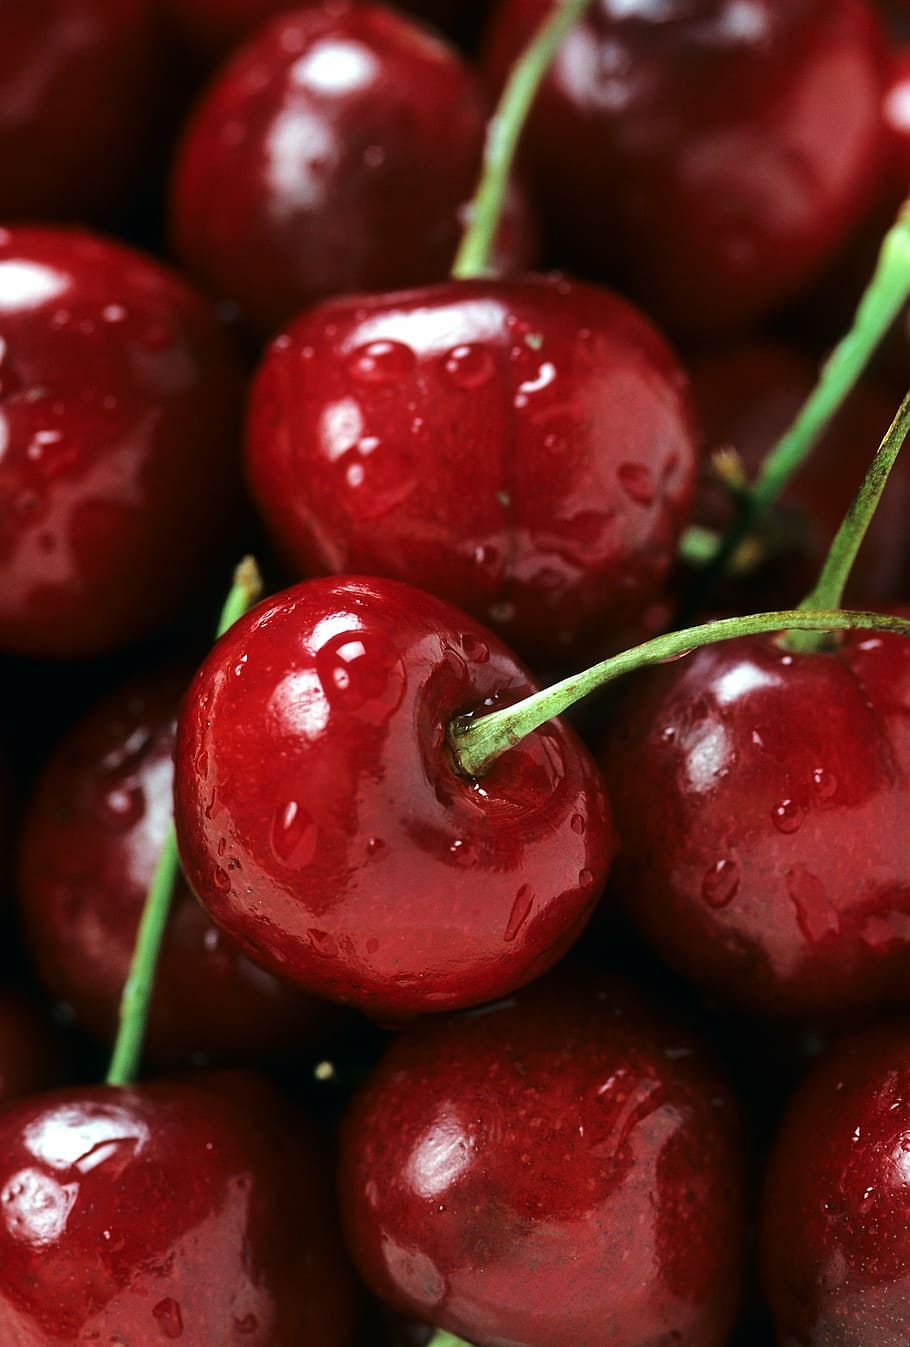 red, cherry, fruit lot, bing cherries, ripe, fruit, stem, berry, fresh, harvested